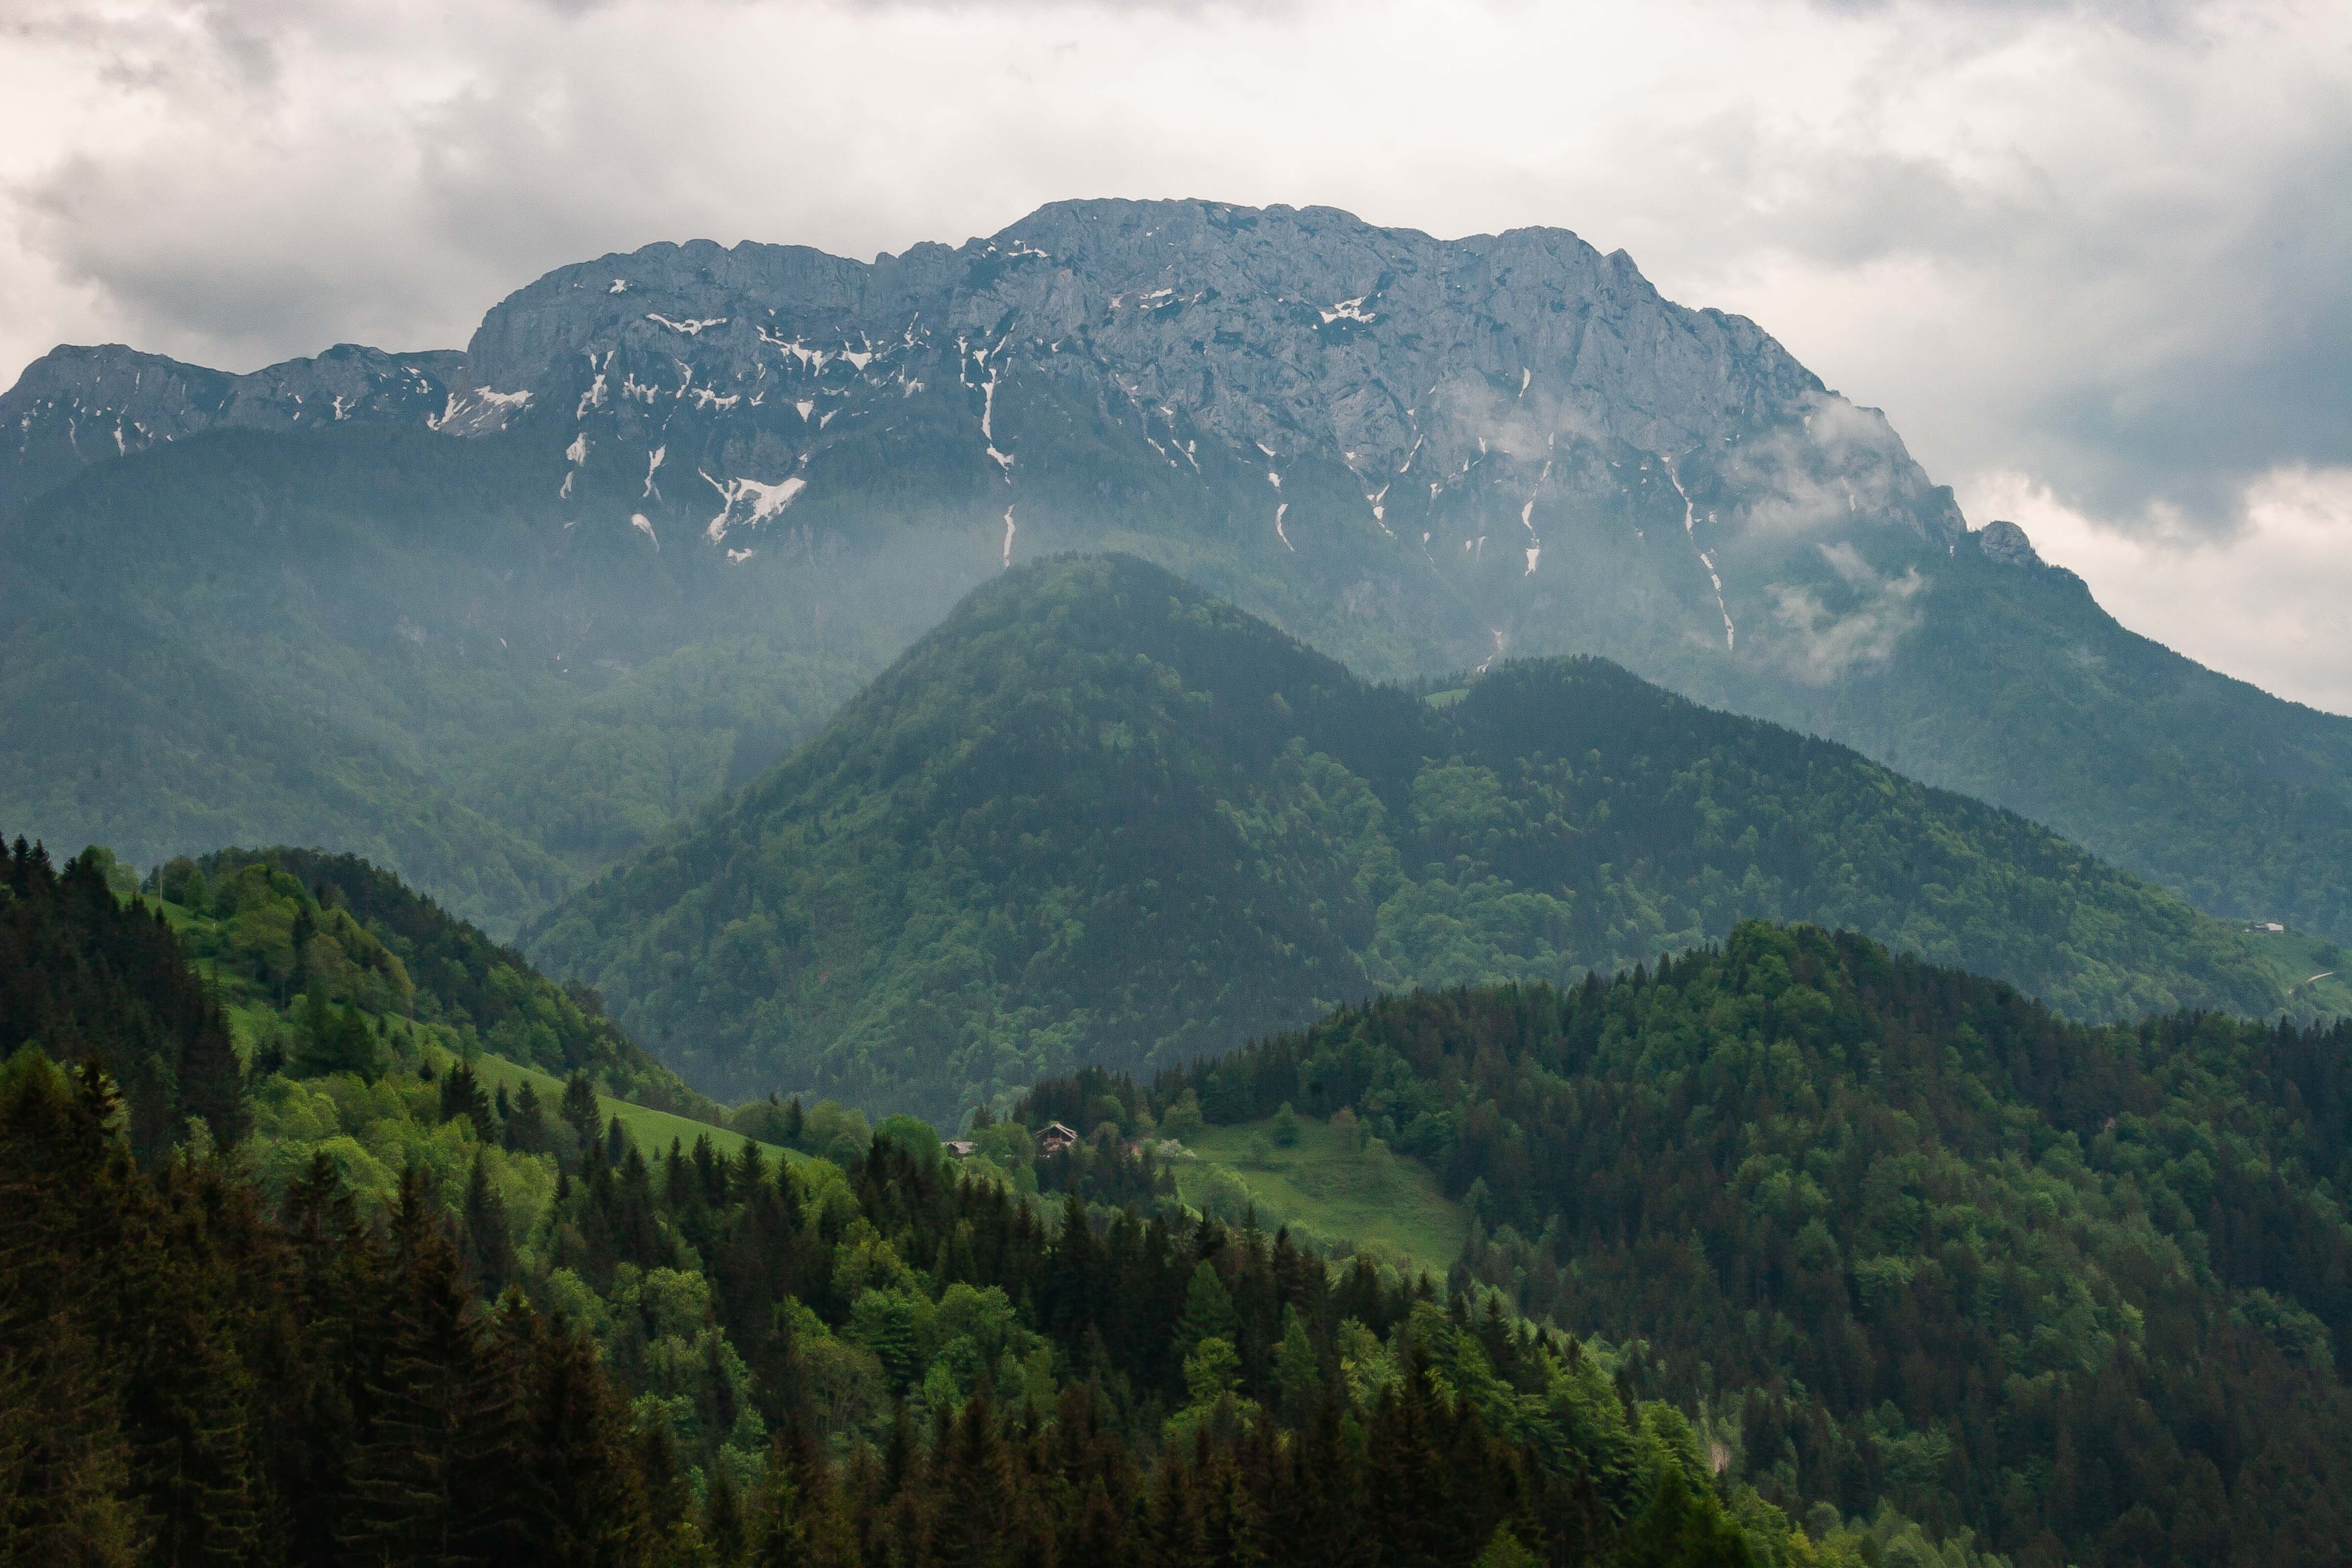 Slovenia, Solcava Prov, Mountain Landscape, 2006, IMG 8410